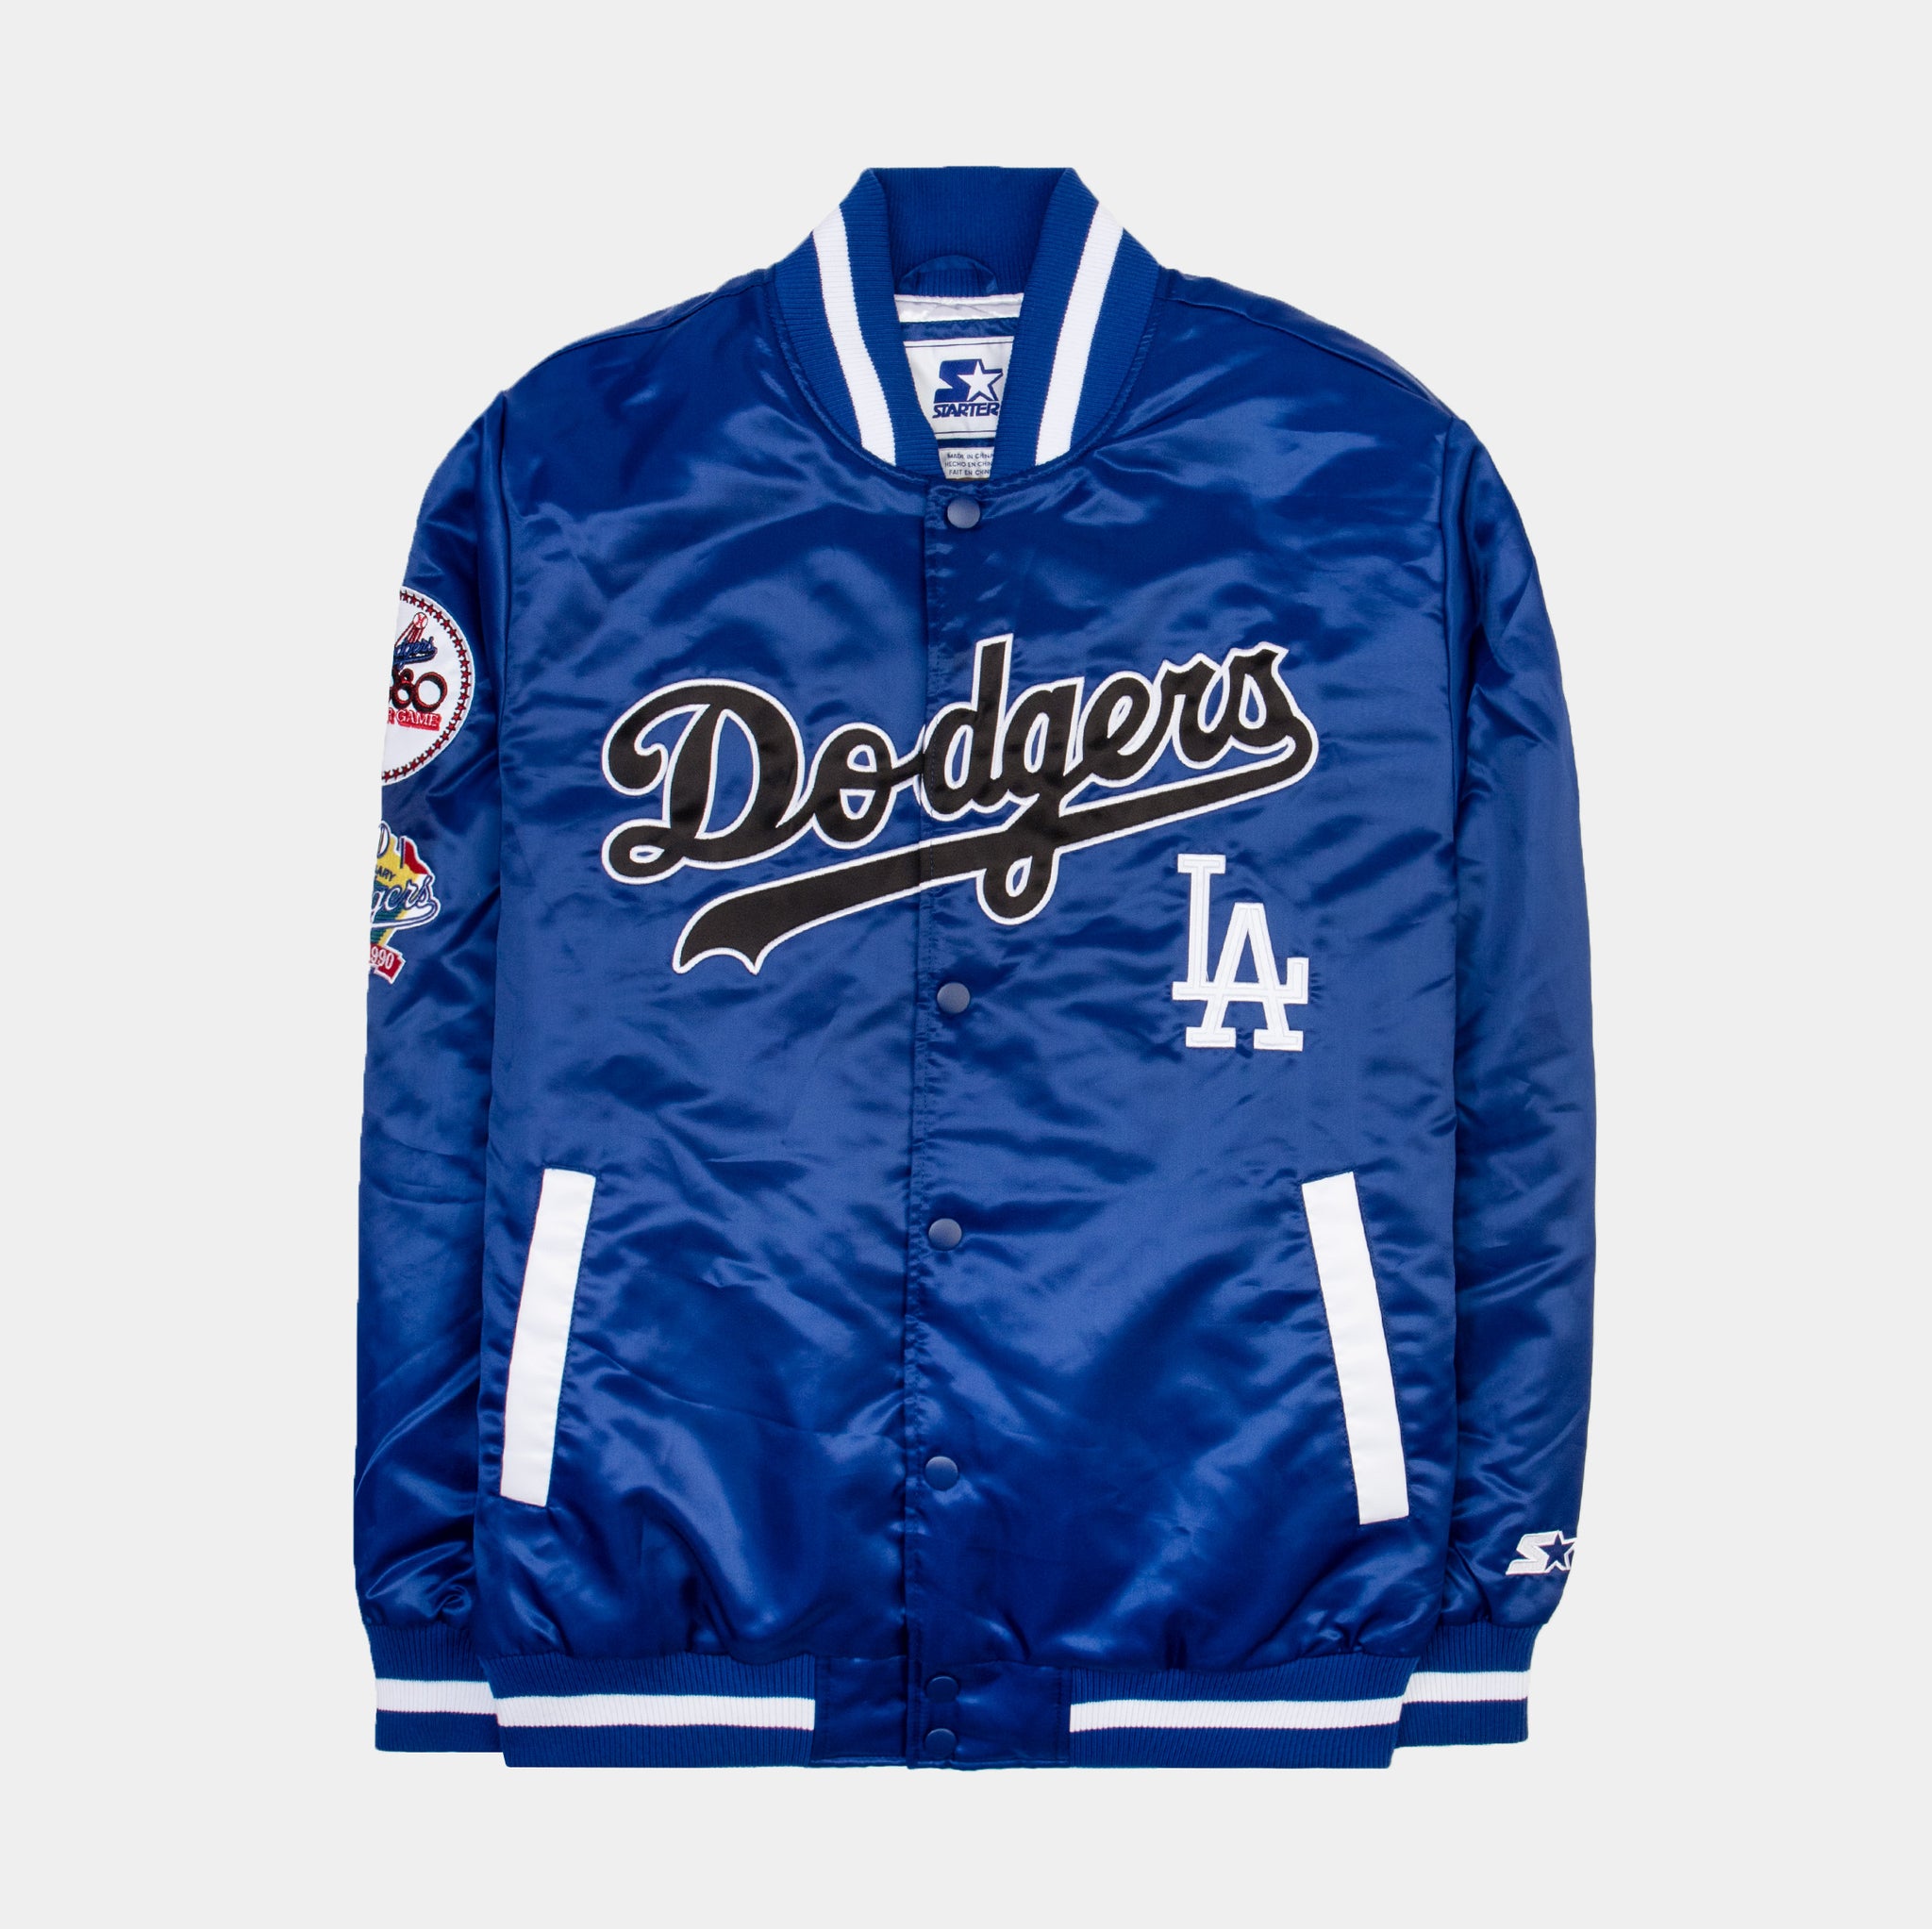 Los Angeles Dodgers Windbreaker (Blue & White) for Sale in